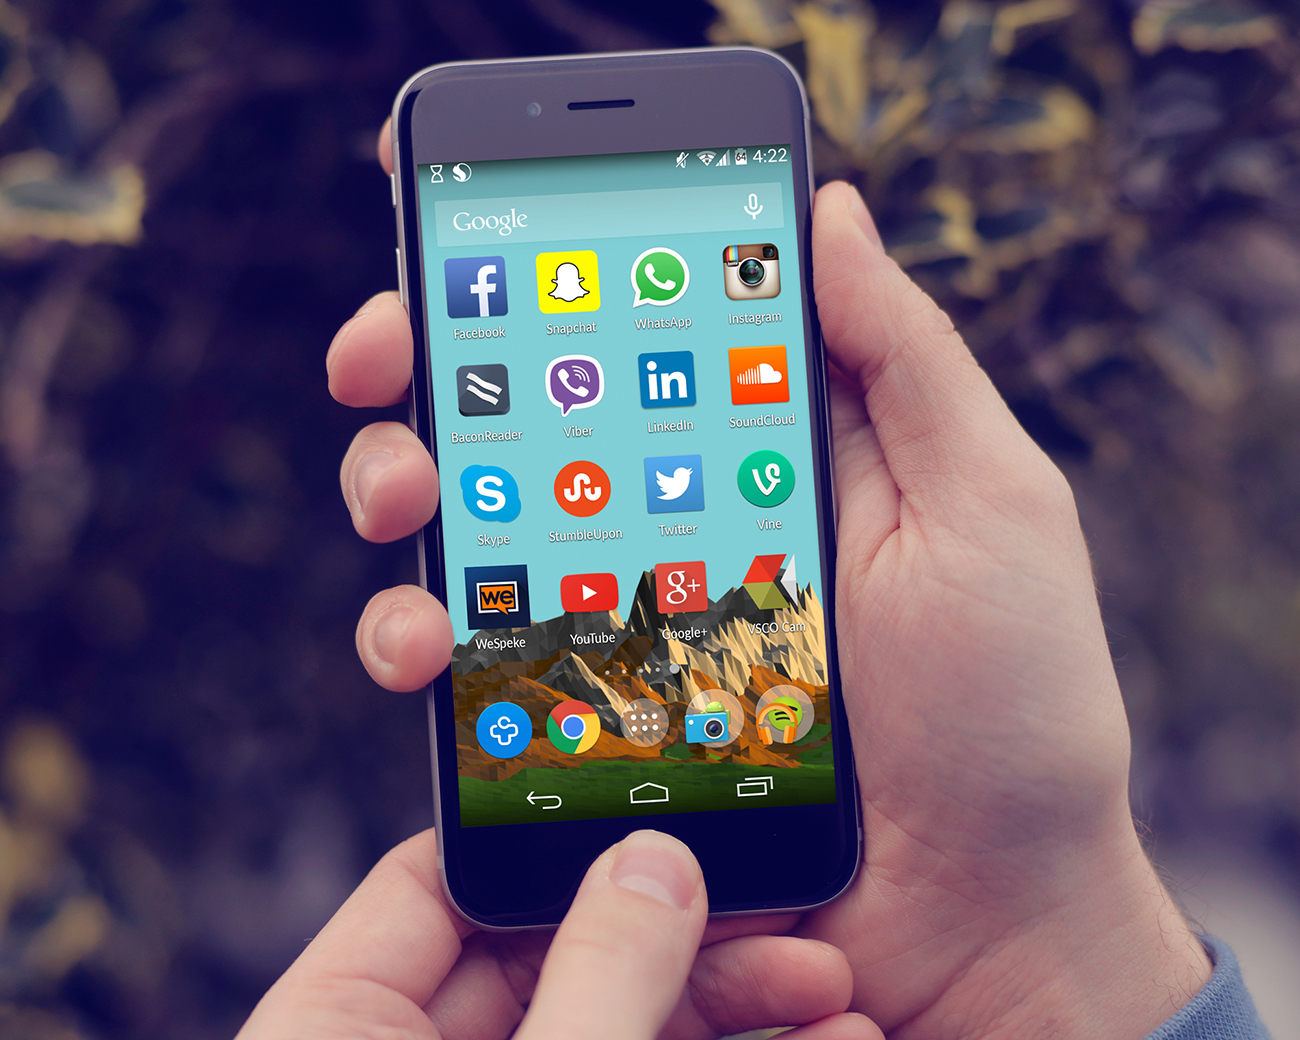 一张照片显示的是手机屏幕，里面有许多应用程序，包括Facebook、Skype、Twitter、LinkedIn和Instagram。